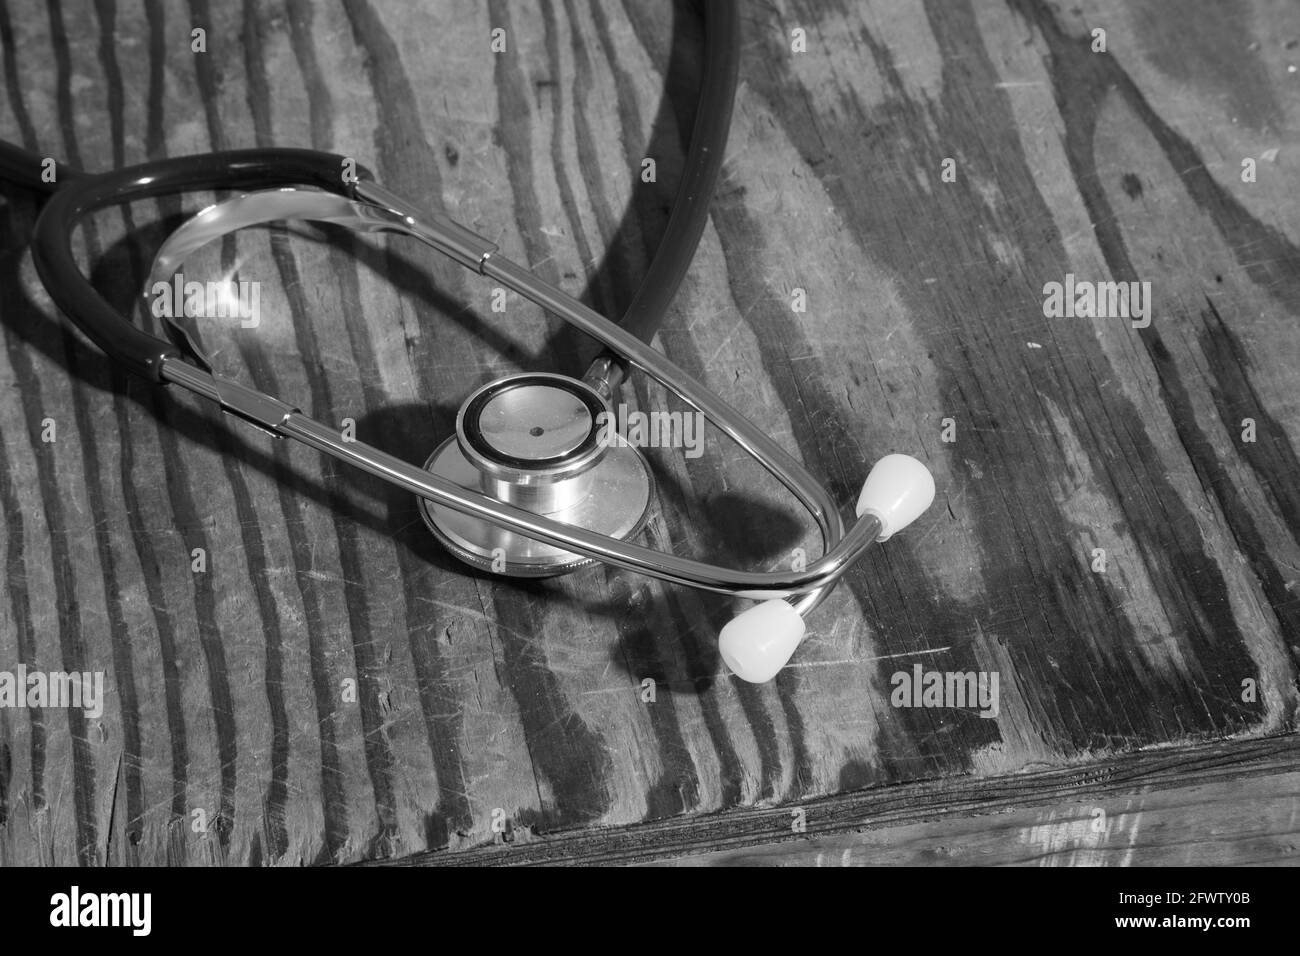 Medical Stethoscope Stock Photo